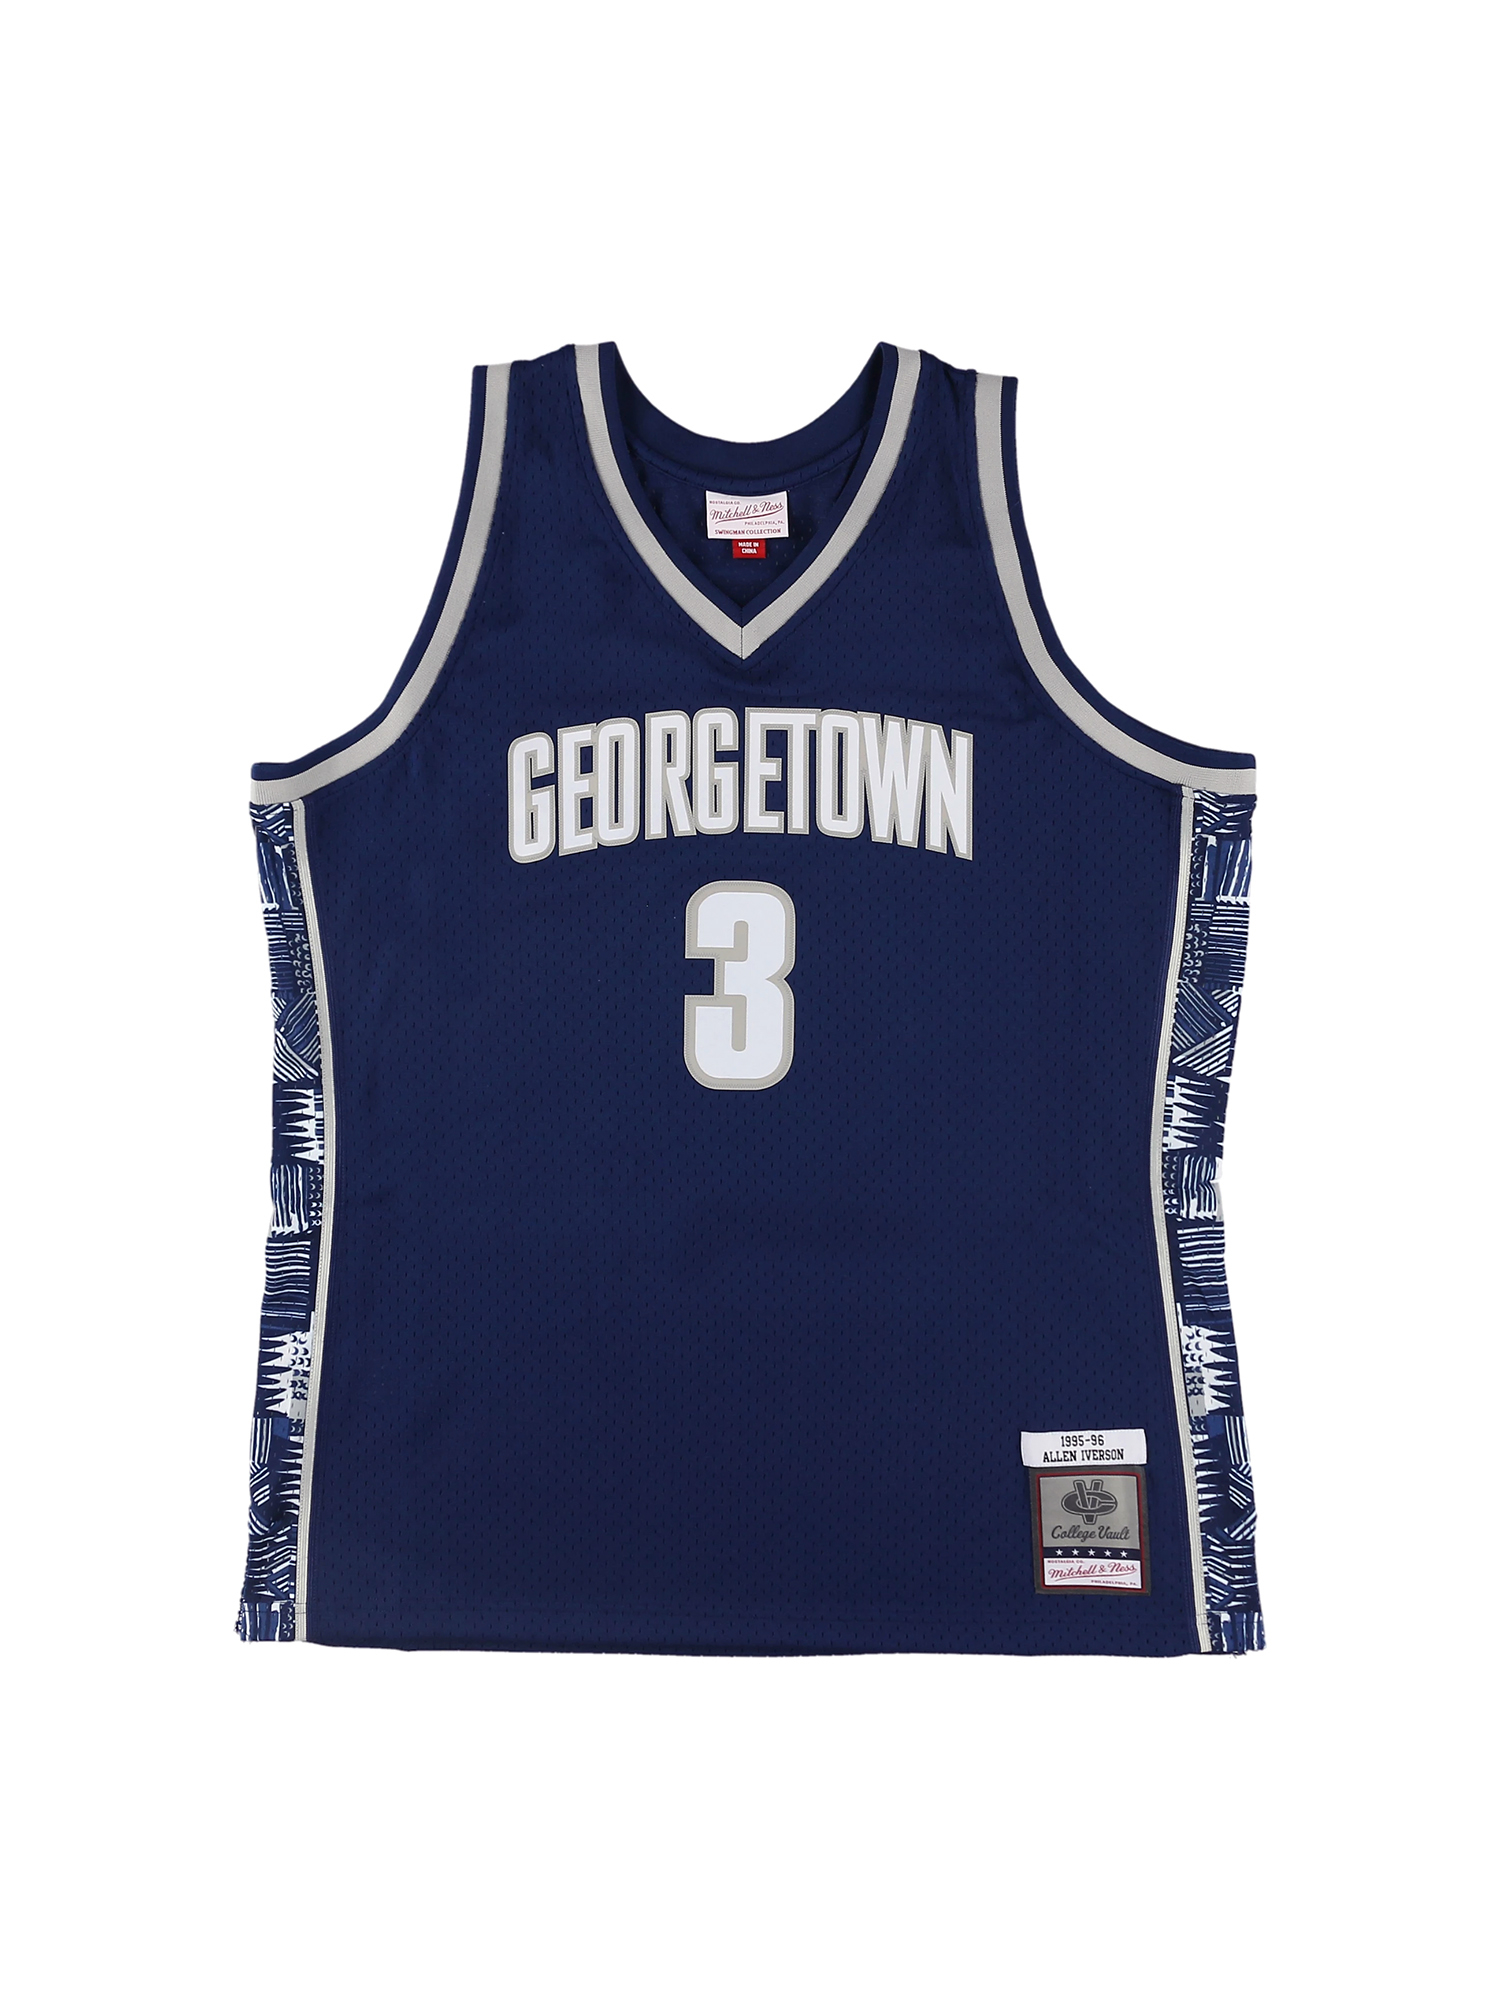 アレン・アイバーソン ジョージタウン ロード スイングマンジャージ 1995-96 GEORGETOWN UNIVERSITY NCAA